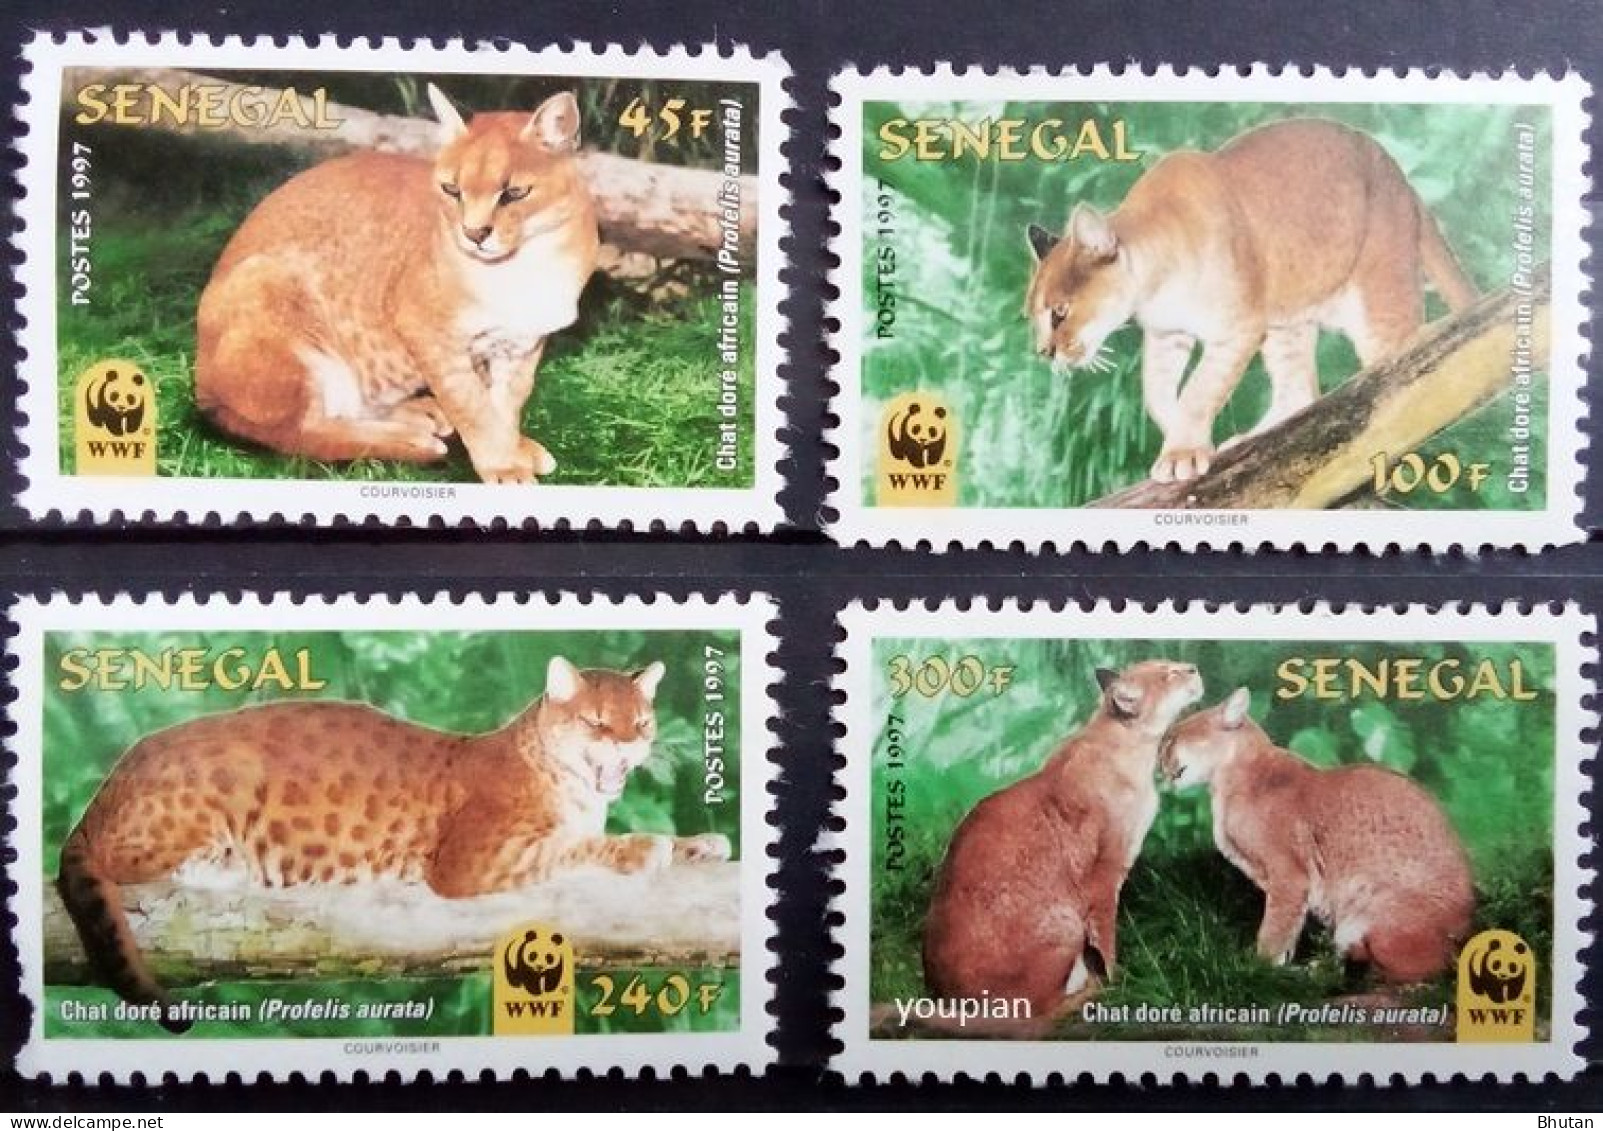 Senegal 1997, WWF - African Golden Cat, MNH Stamps Set - Sénégal (1960-...)